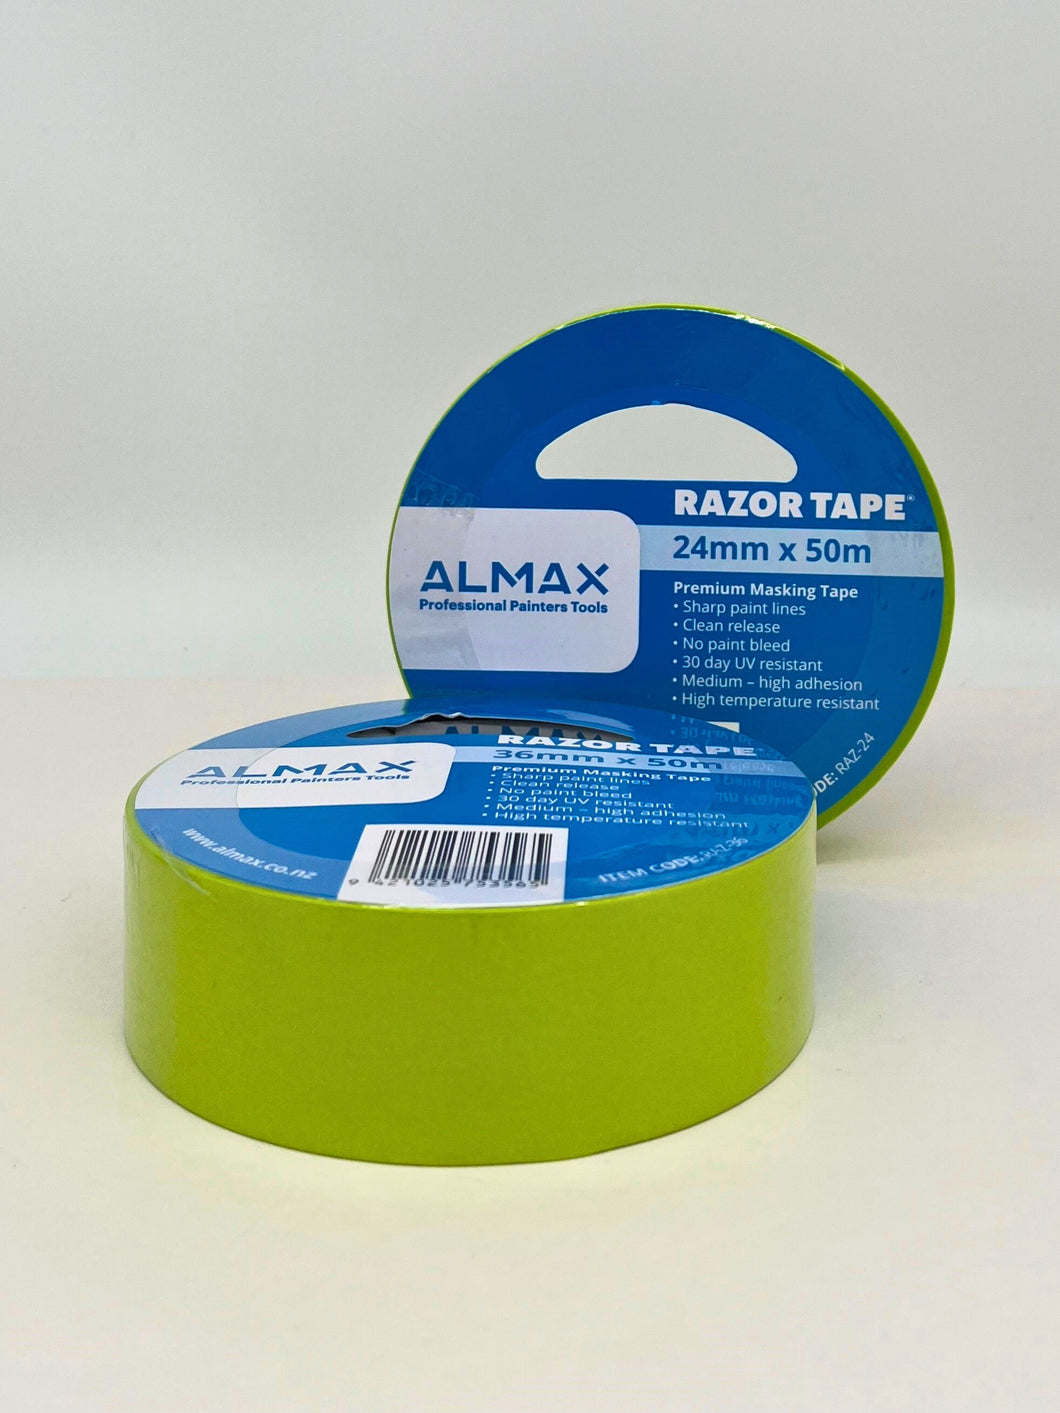 Almax Razor Tape